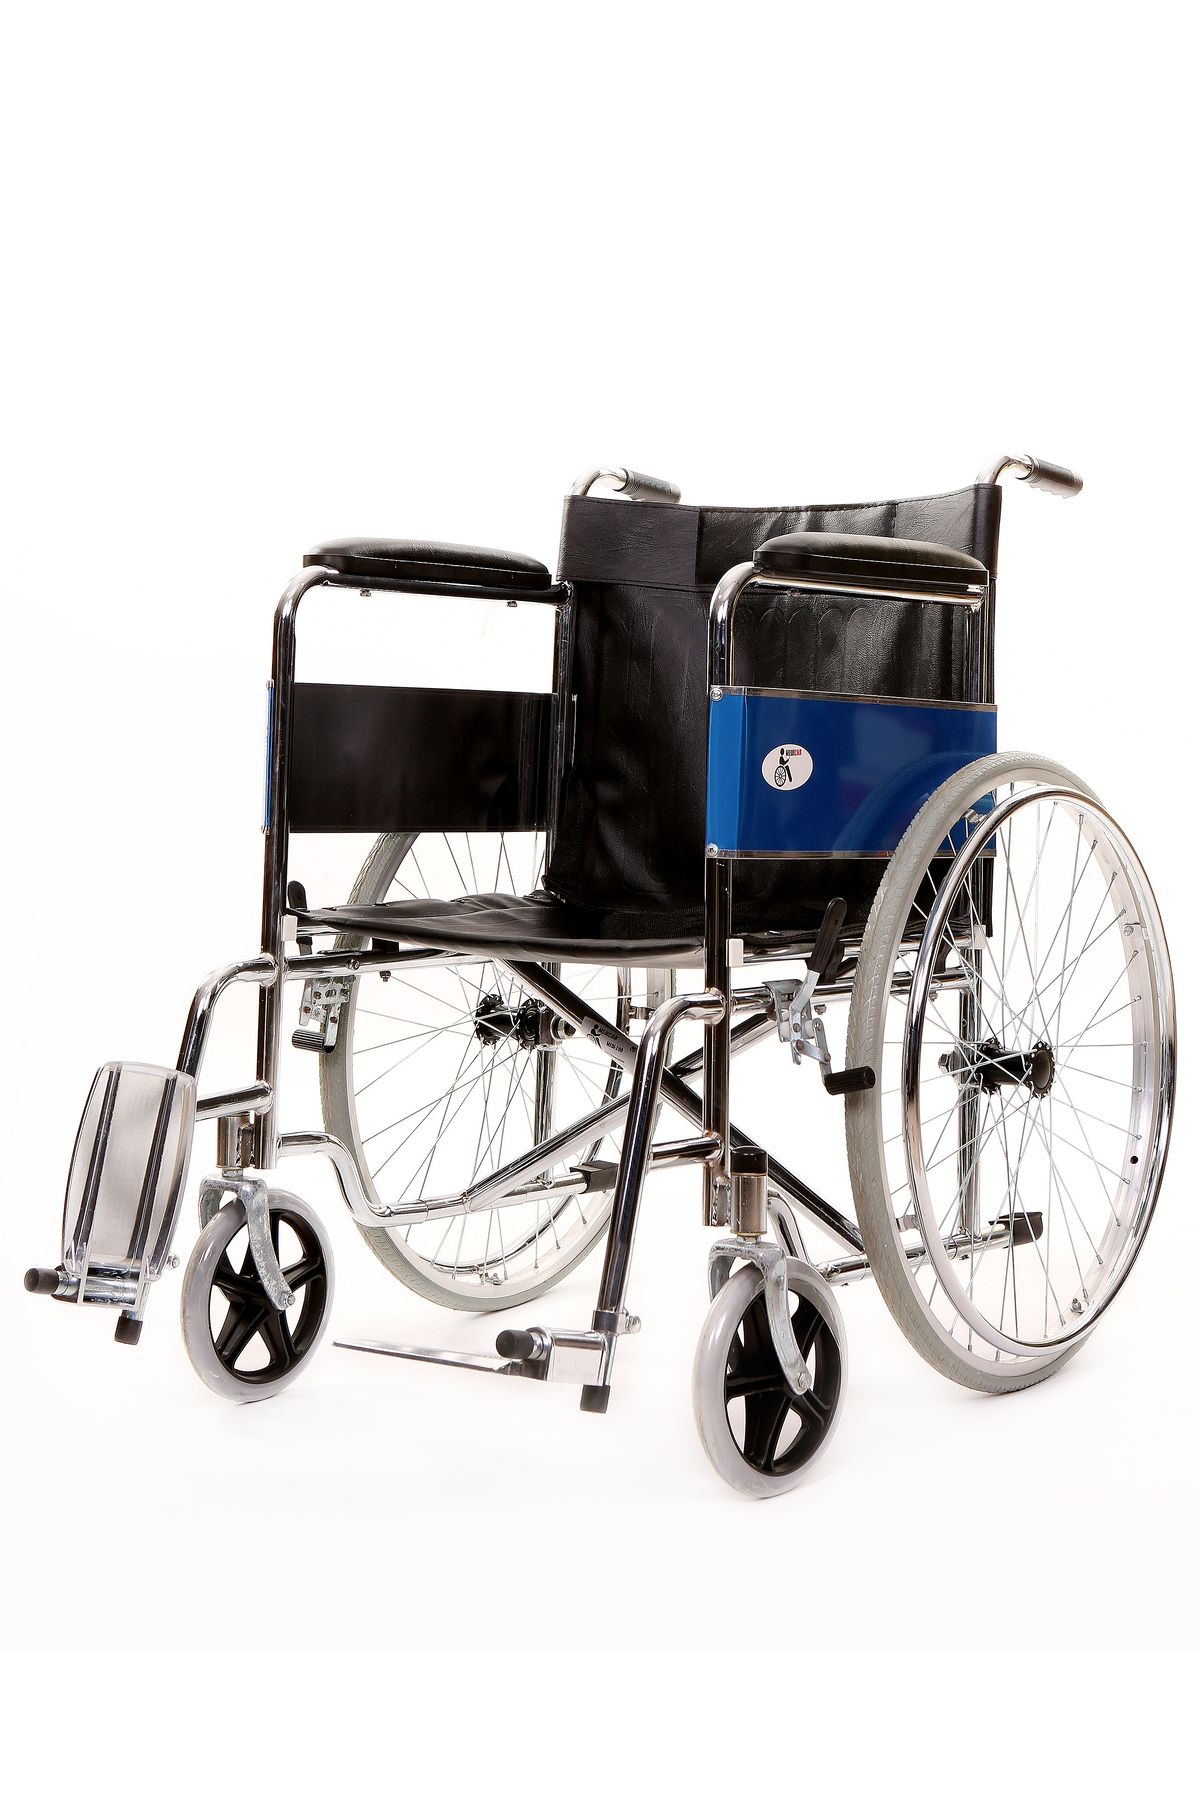 MEDİCAR 120 Kg Taşıma Kapasitesi Katlanabilir Refagatçi Frenli Emniyet Kemerli Manuel Tekerlekli Sandalye